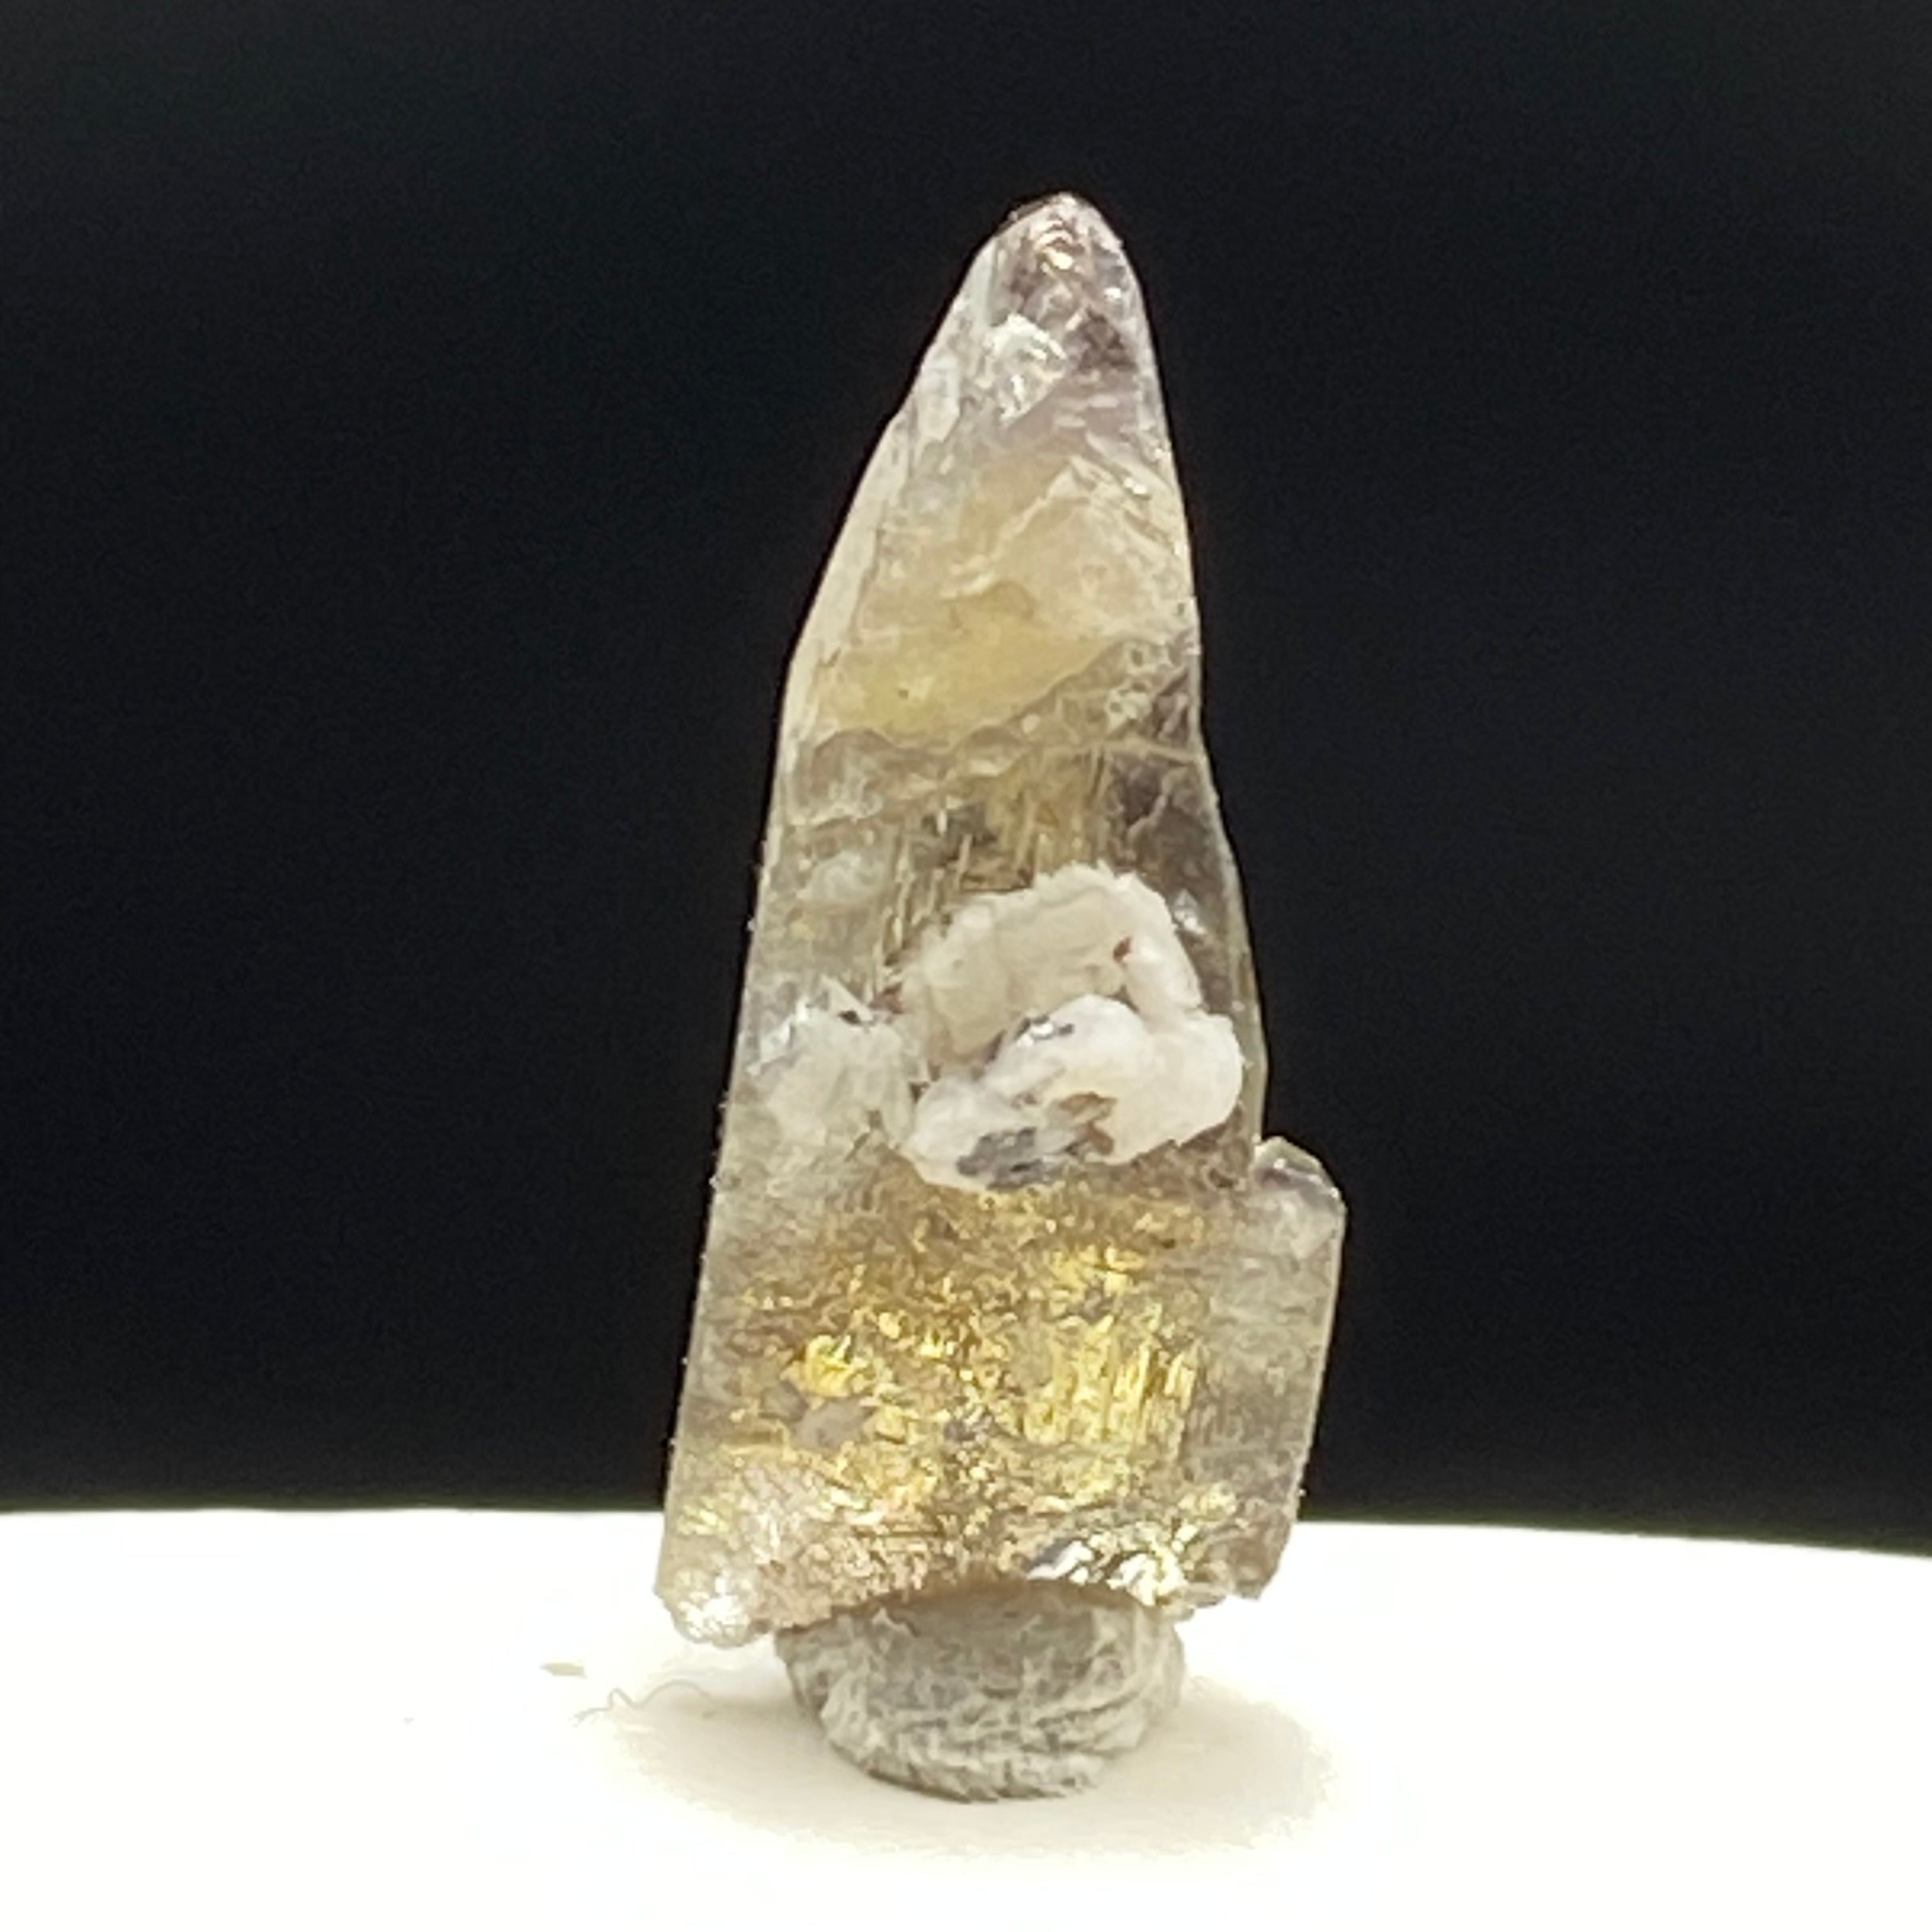 Real Tanzanite Crystal - 076